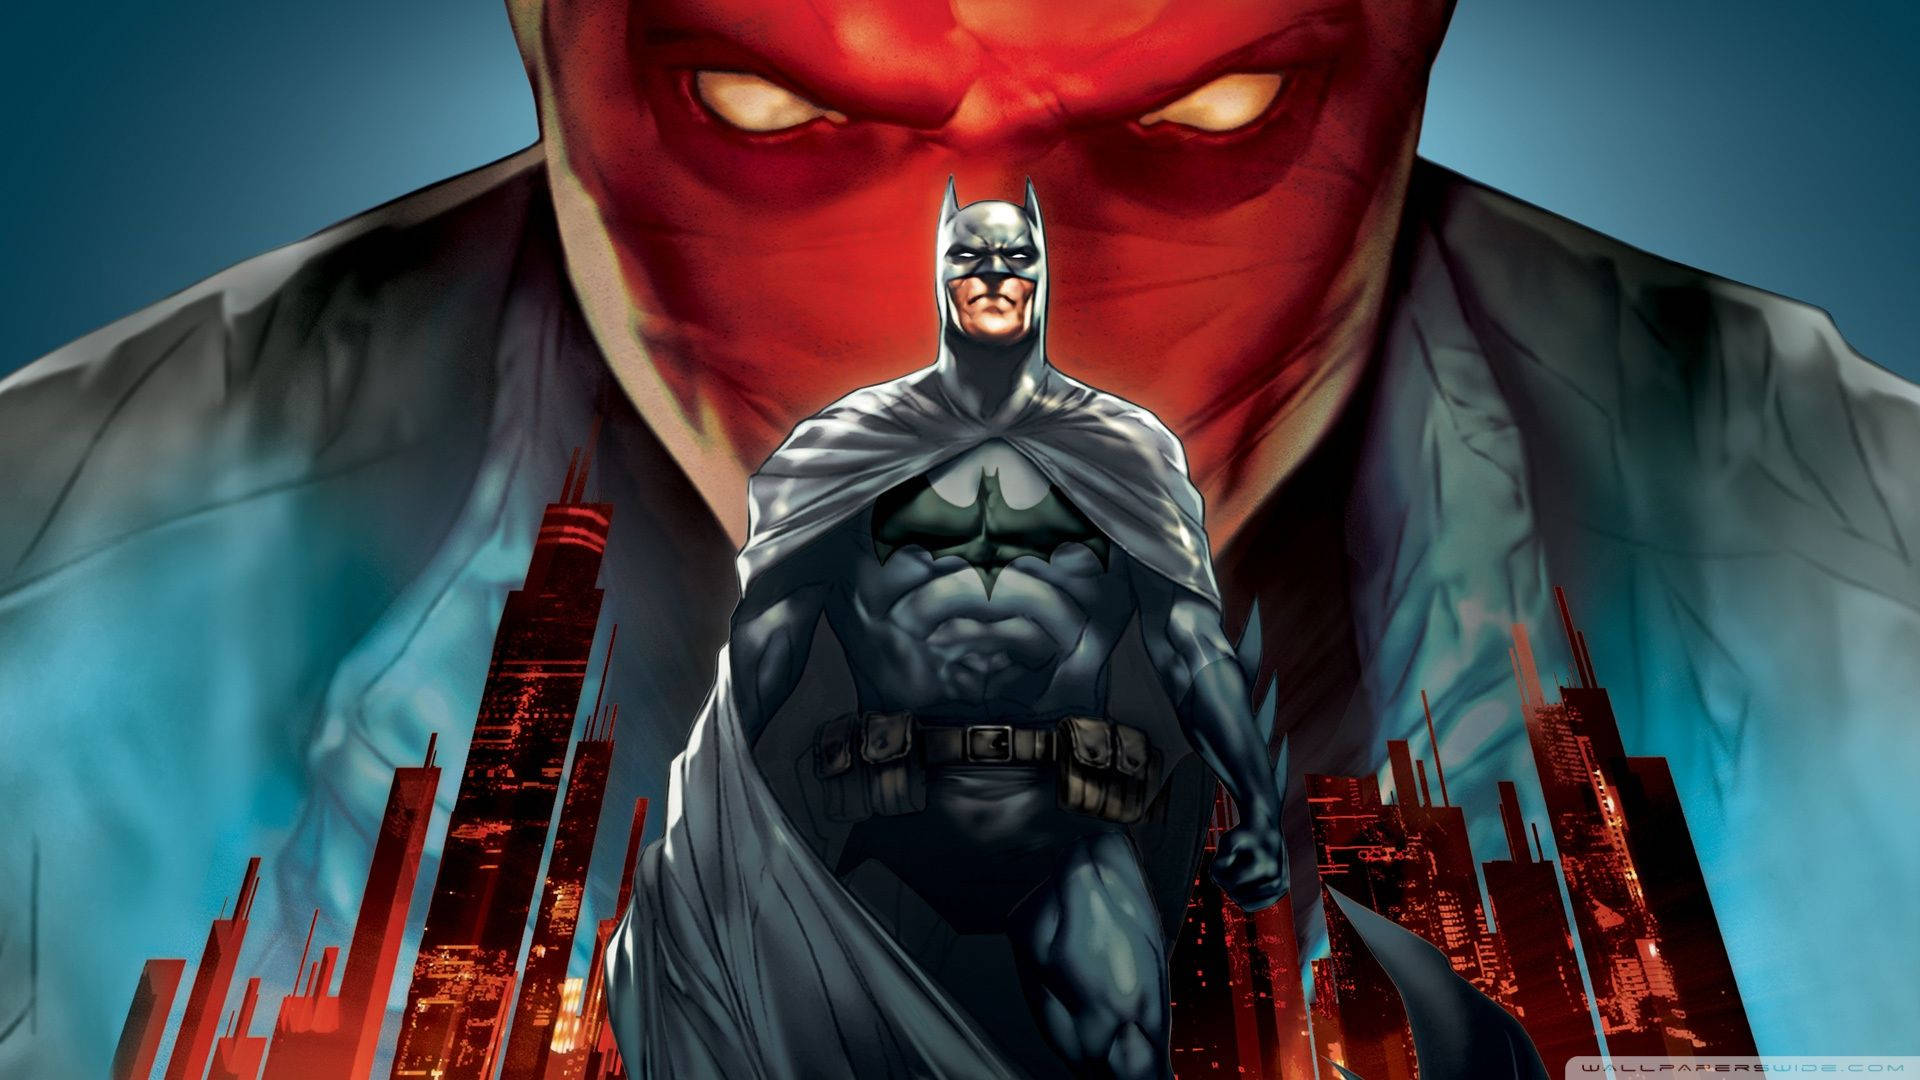 Red Hood Above Batman Wallpaper